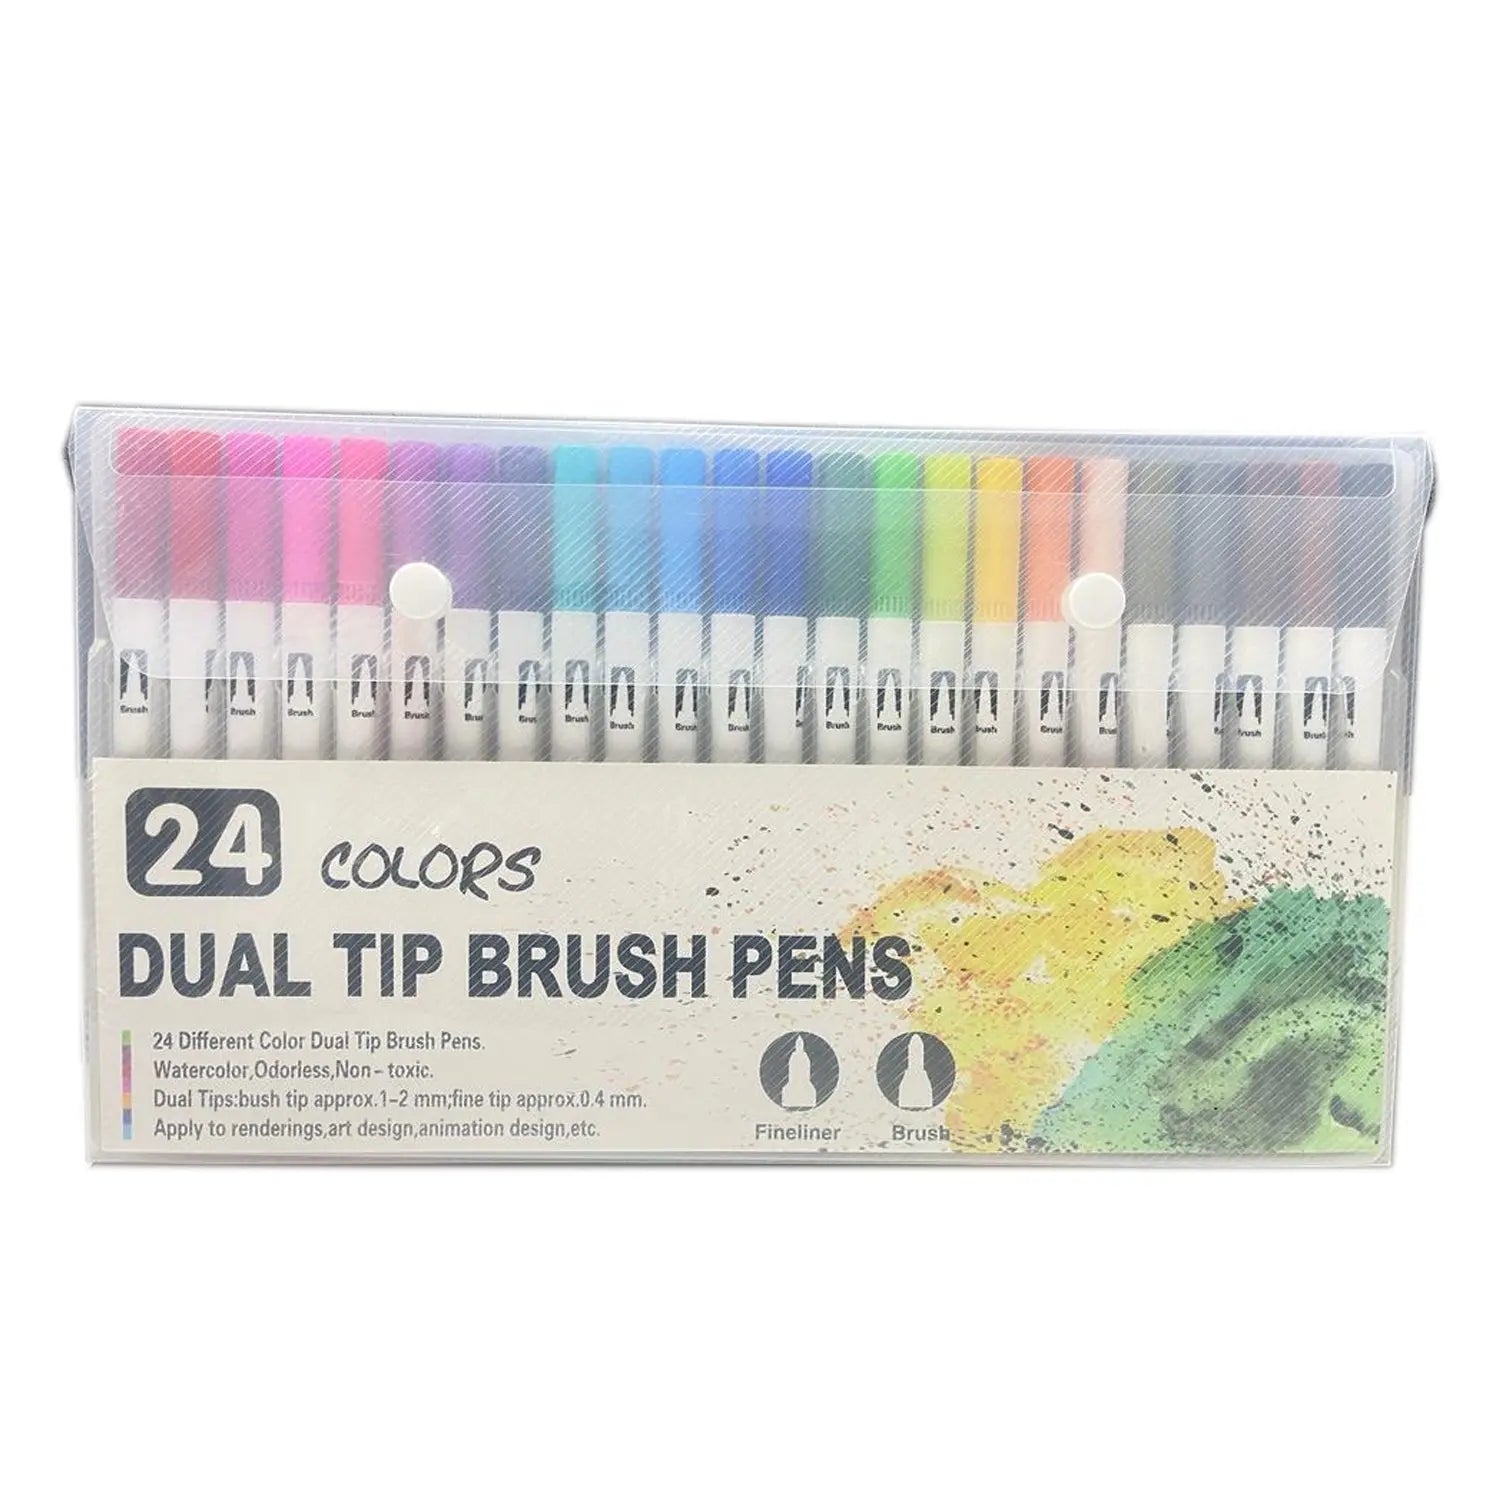 Doms Brush Pen Set of 14 Shades - Canvazo